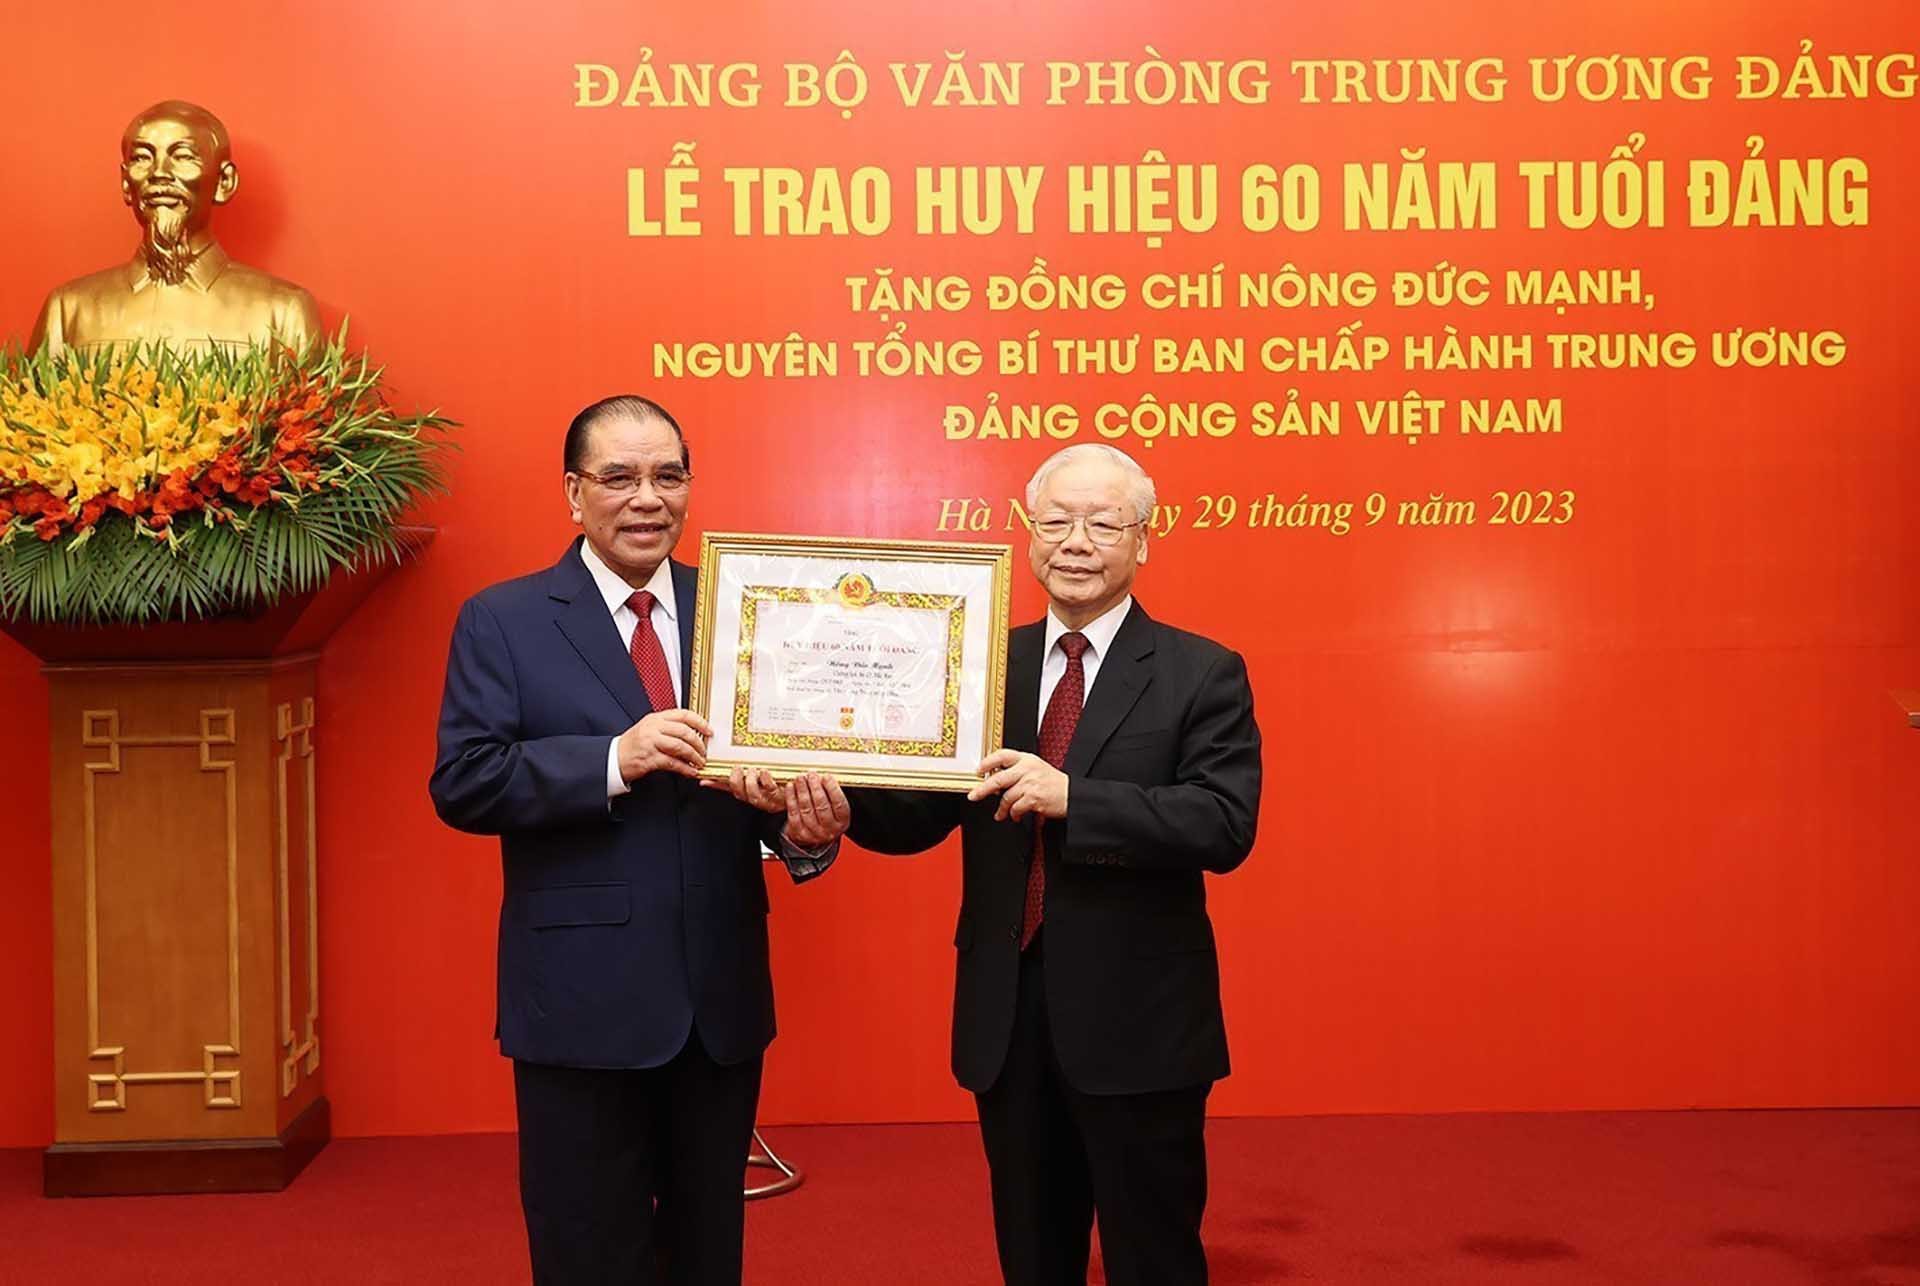 Tổng Bí thư Nguyễn Phú Trọng trao Huy hiệu 60 năm tuổi Đảng cho nguyên Tổng Bí thư Nông Đức Mạnh. (Nguồn: TTXVN)